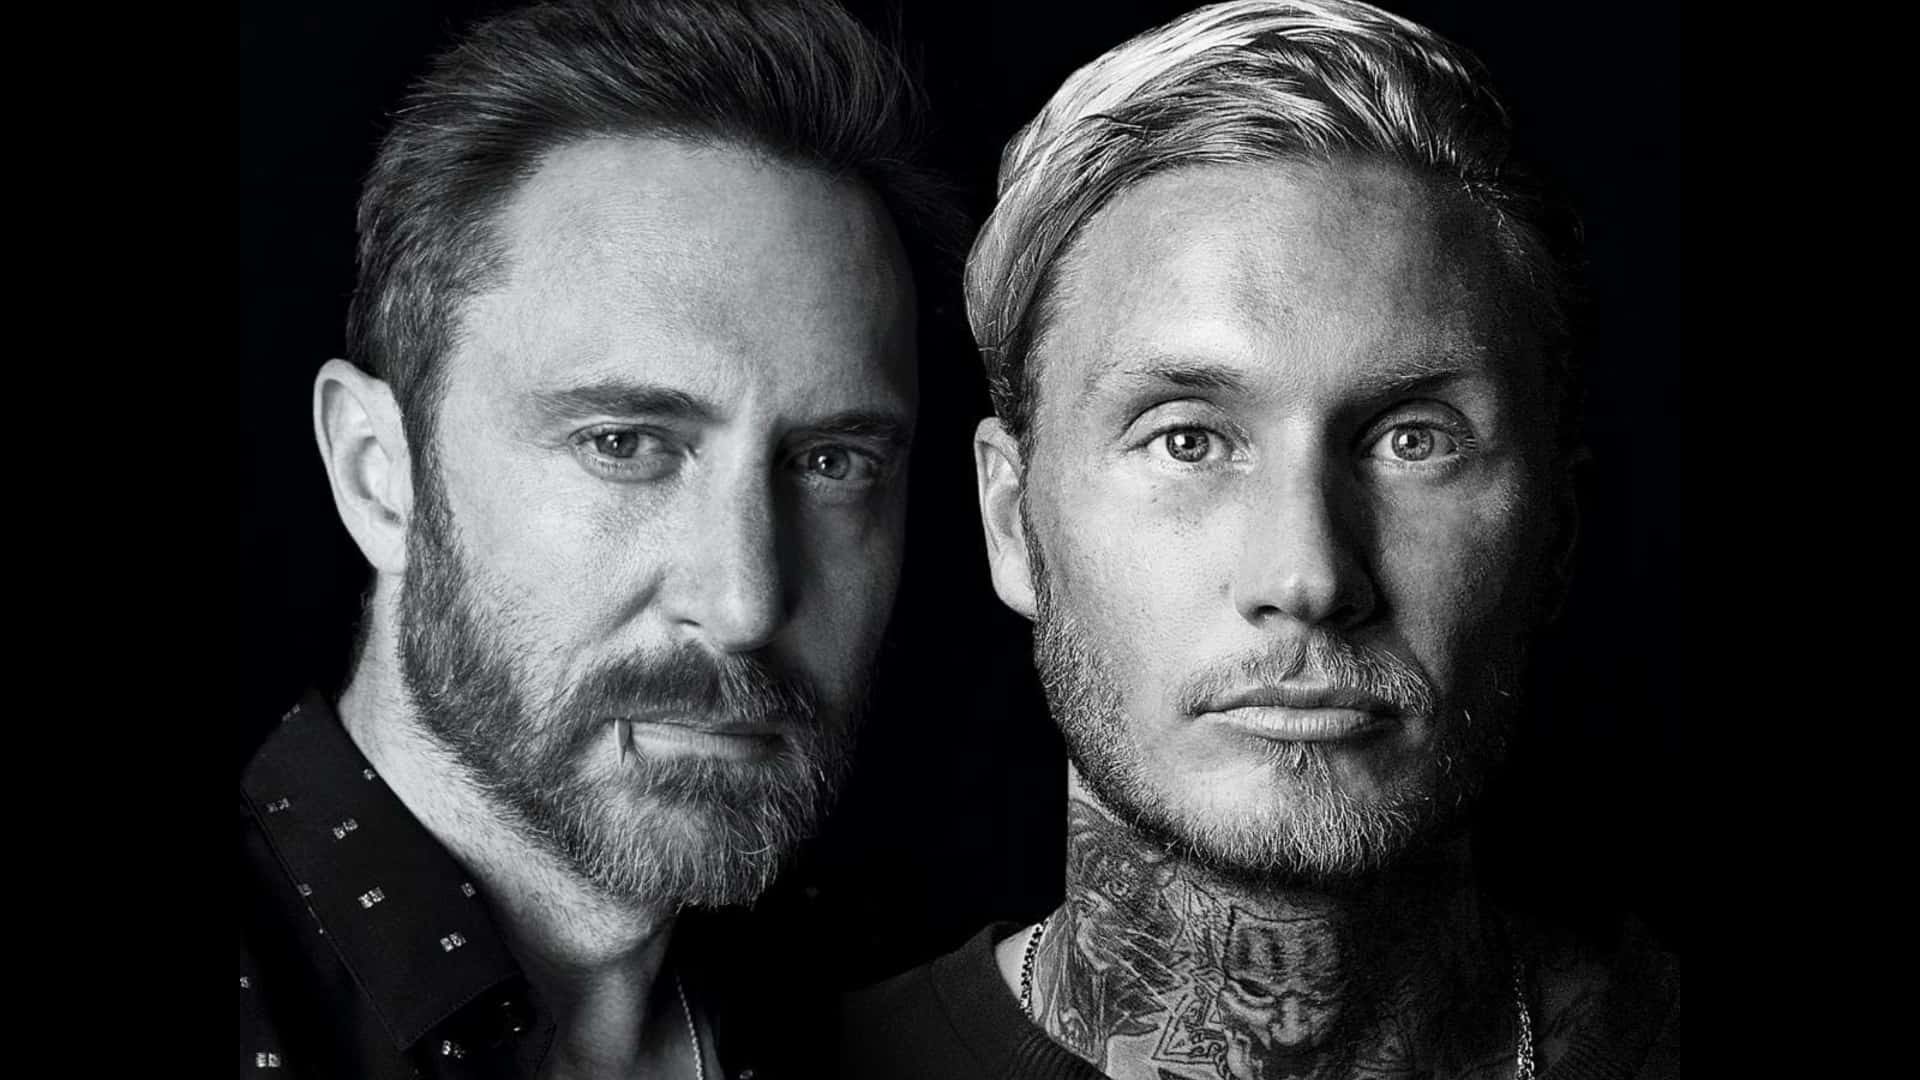 David Guetta and MORTEN